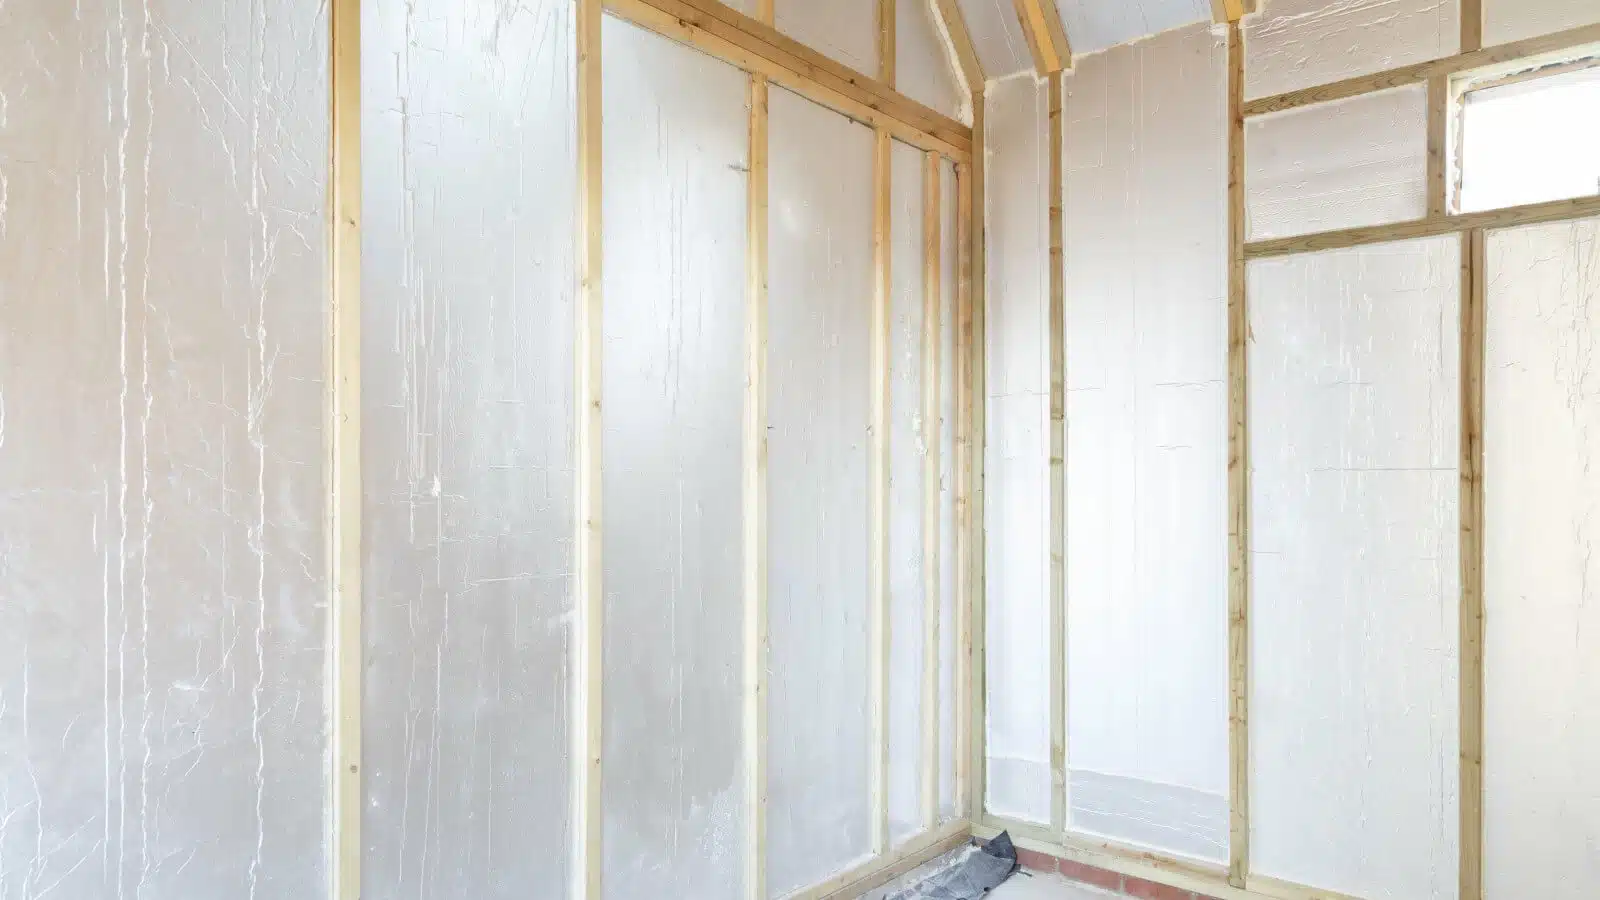 Internal wall insulation